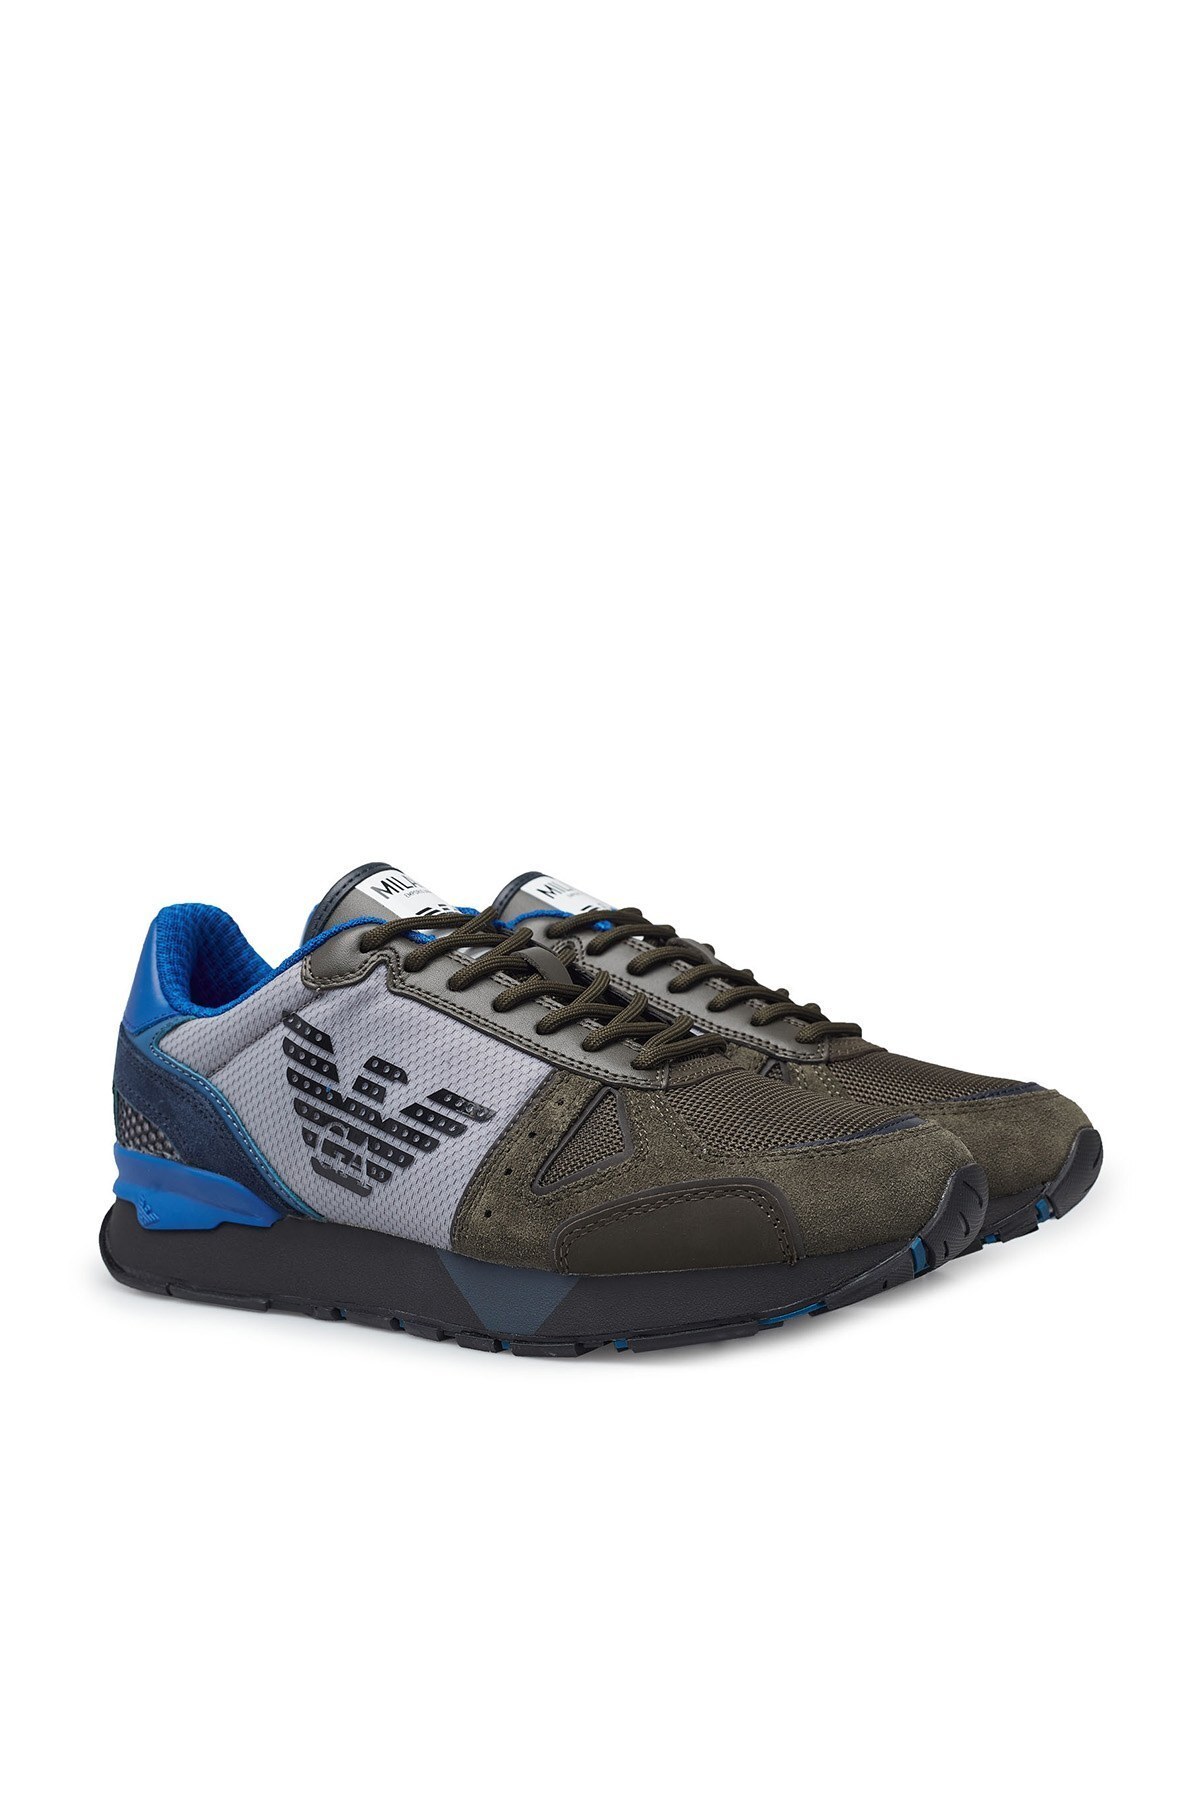 Emporio Armani Sneaker Erkek Ayakkabı X4X289 XM499 N017 KAHVE-MAVİ